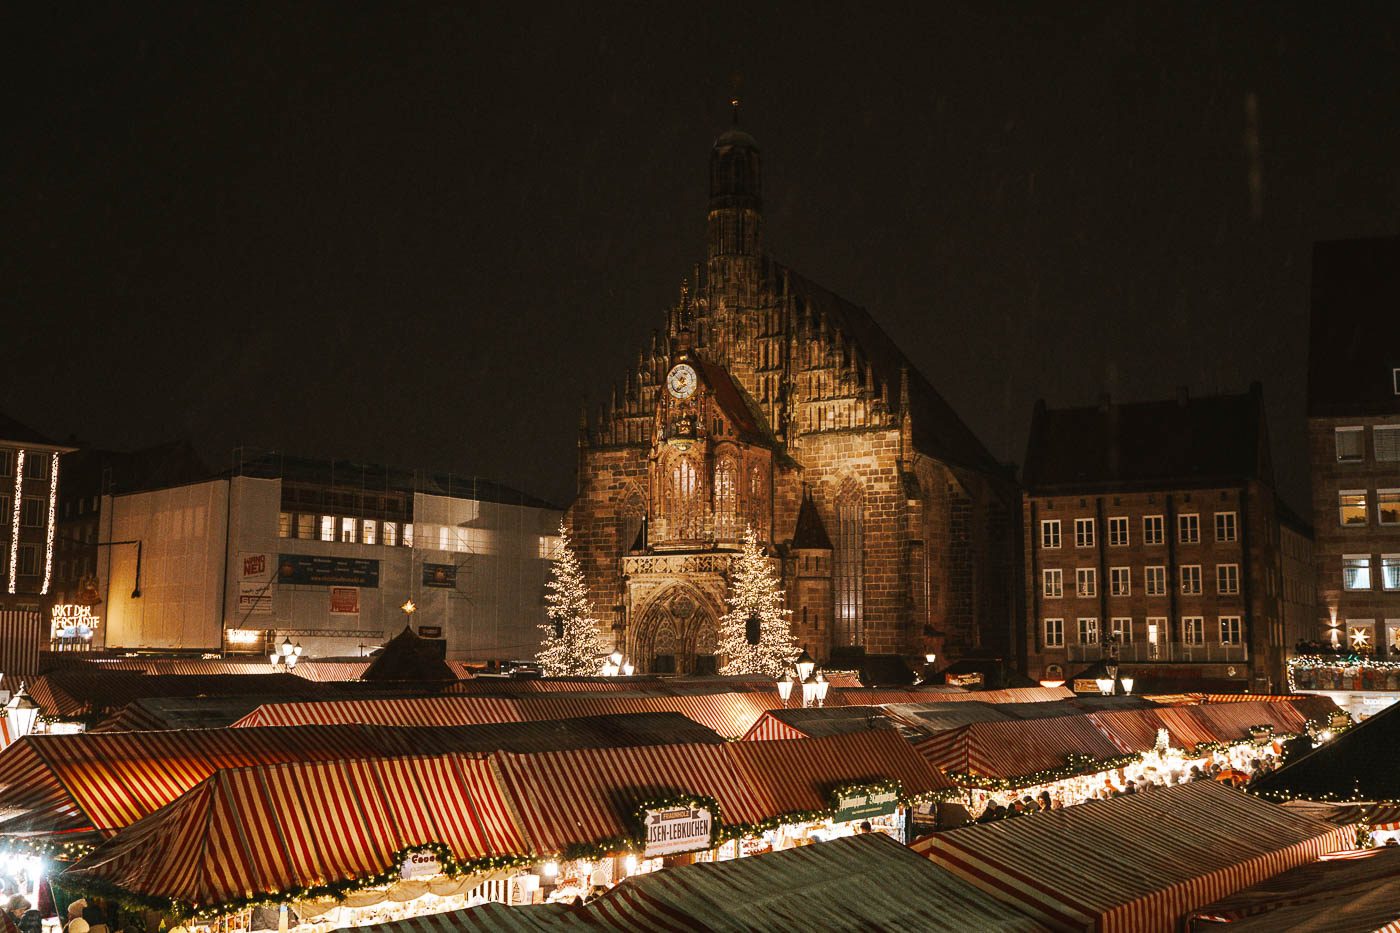 Christkindlesmarkt uno de los mercados navideños más antiguos y famosos que ver en Nuremberg en Navidad